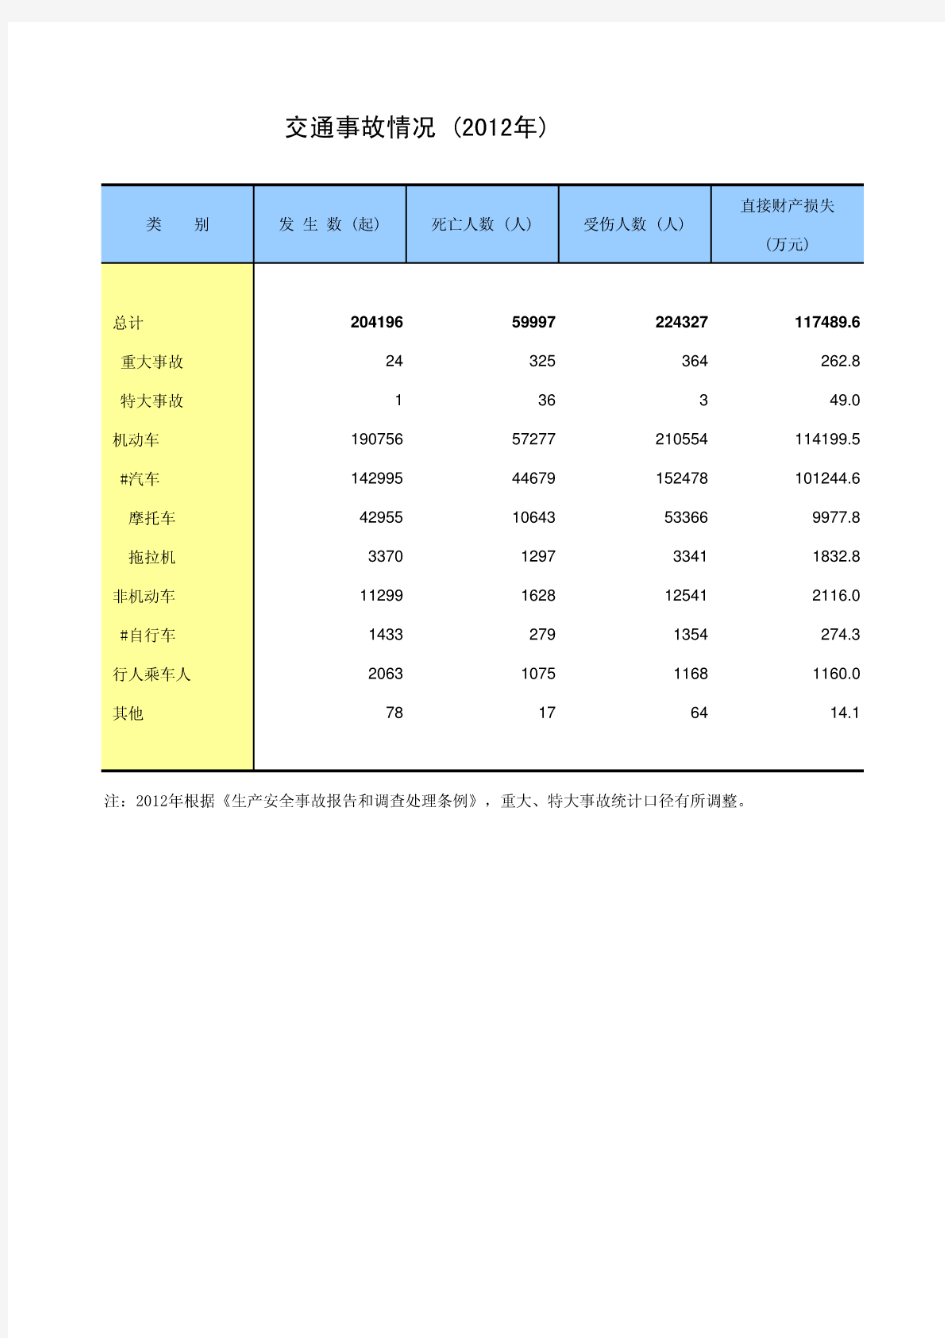 中国统计年鉴2013交通事故情况(2012年)